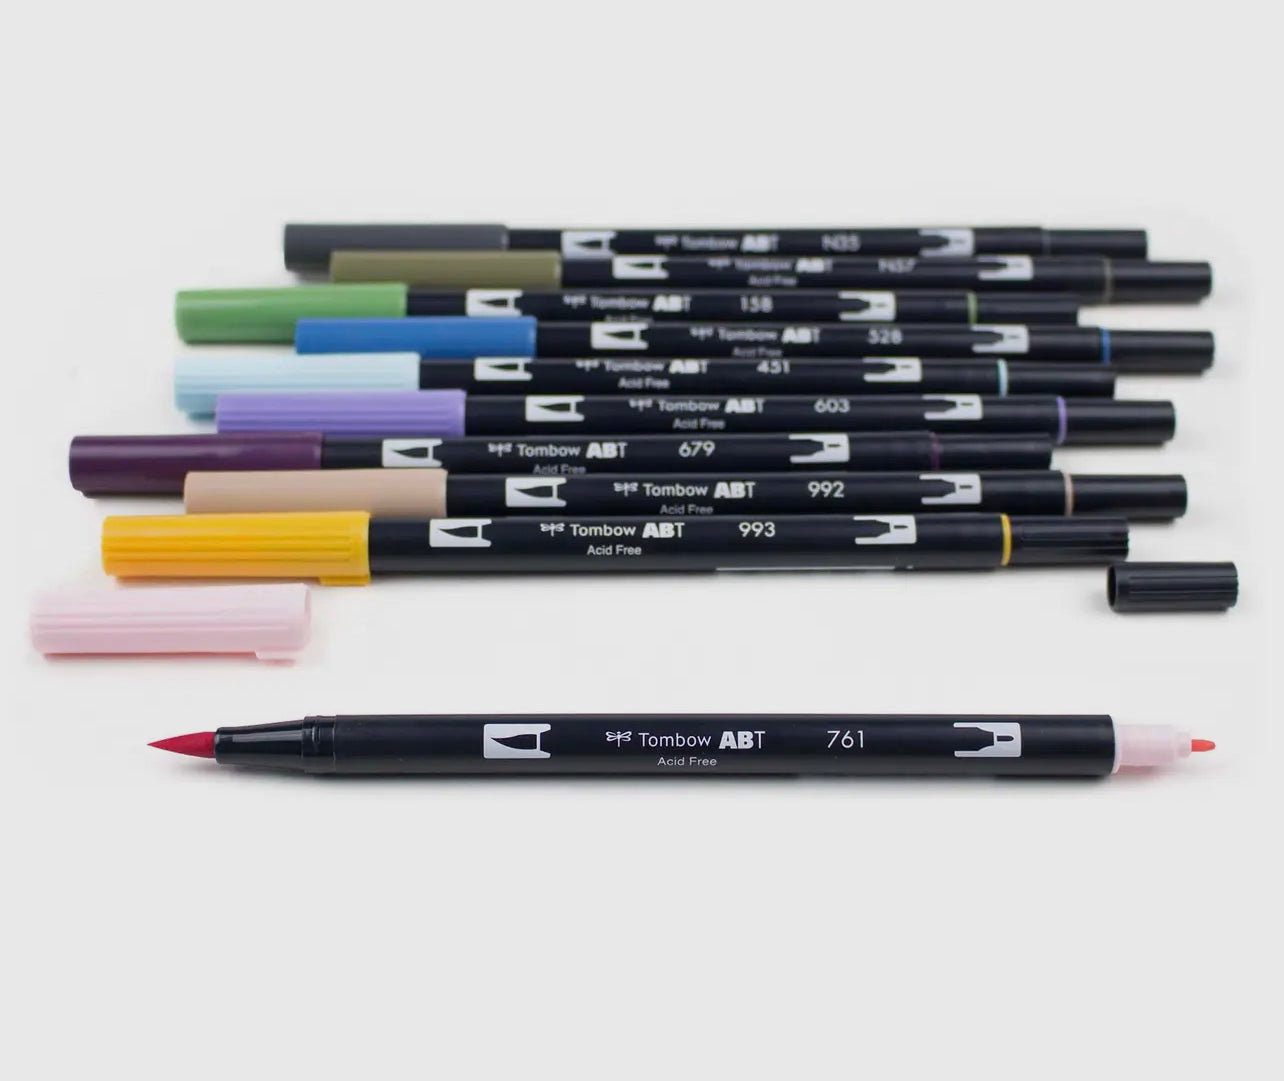 Dual Brush Pen Art Markers, Desert Flora, 10 Pack